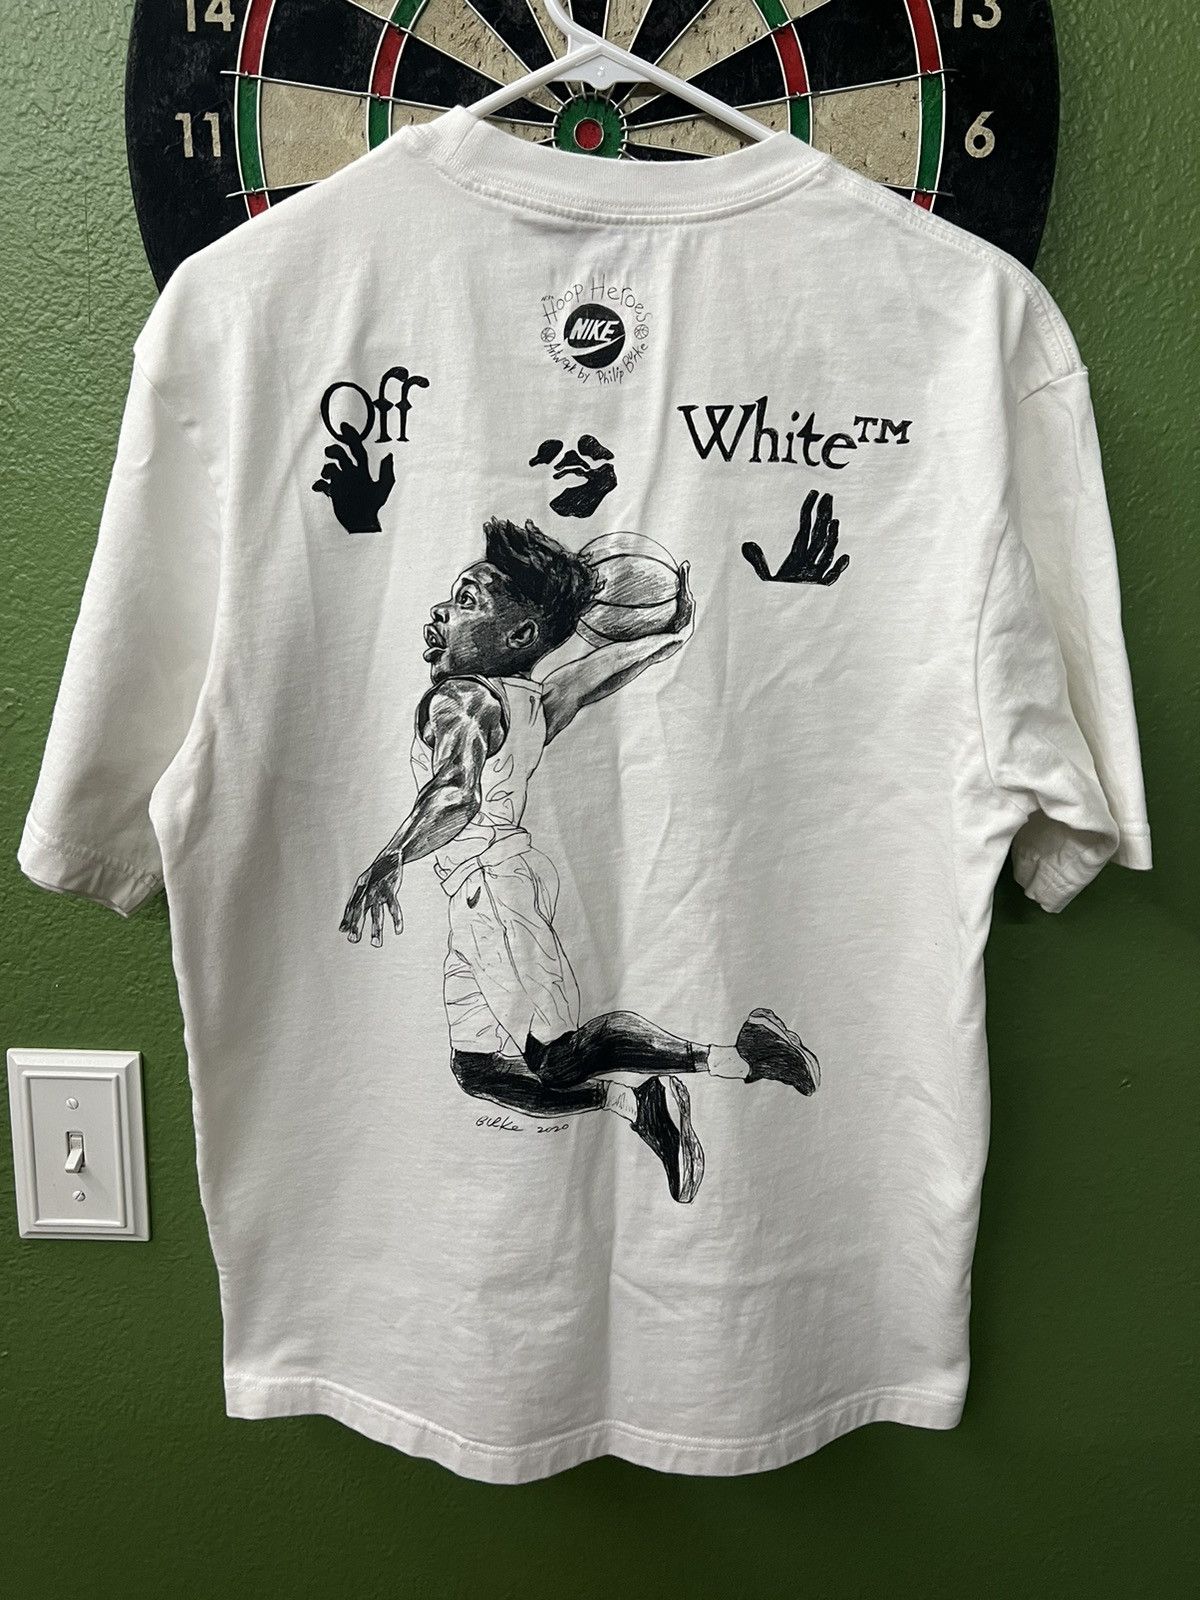 Jordan Brand Off-White x Jordan T-shirt | Grailed